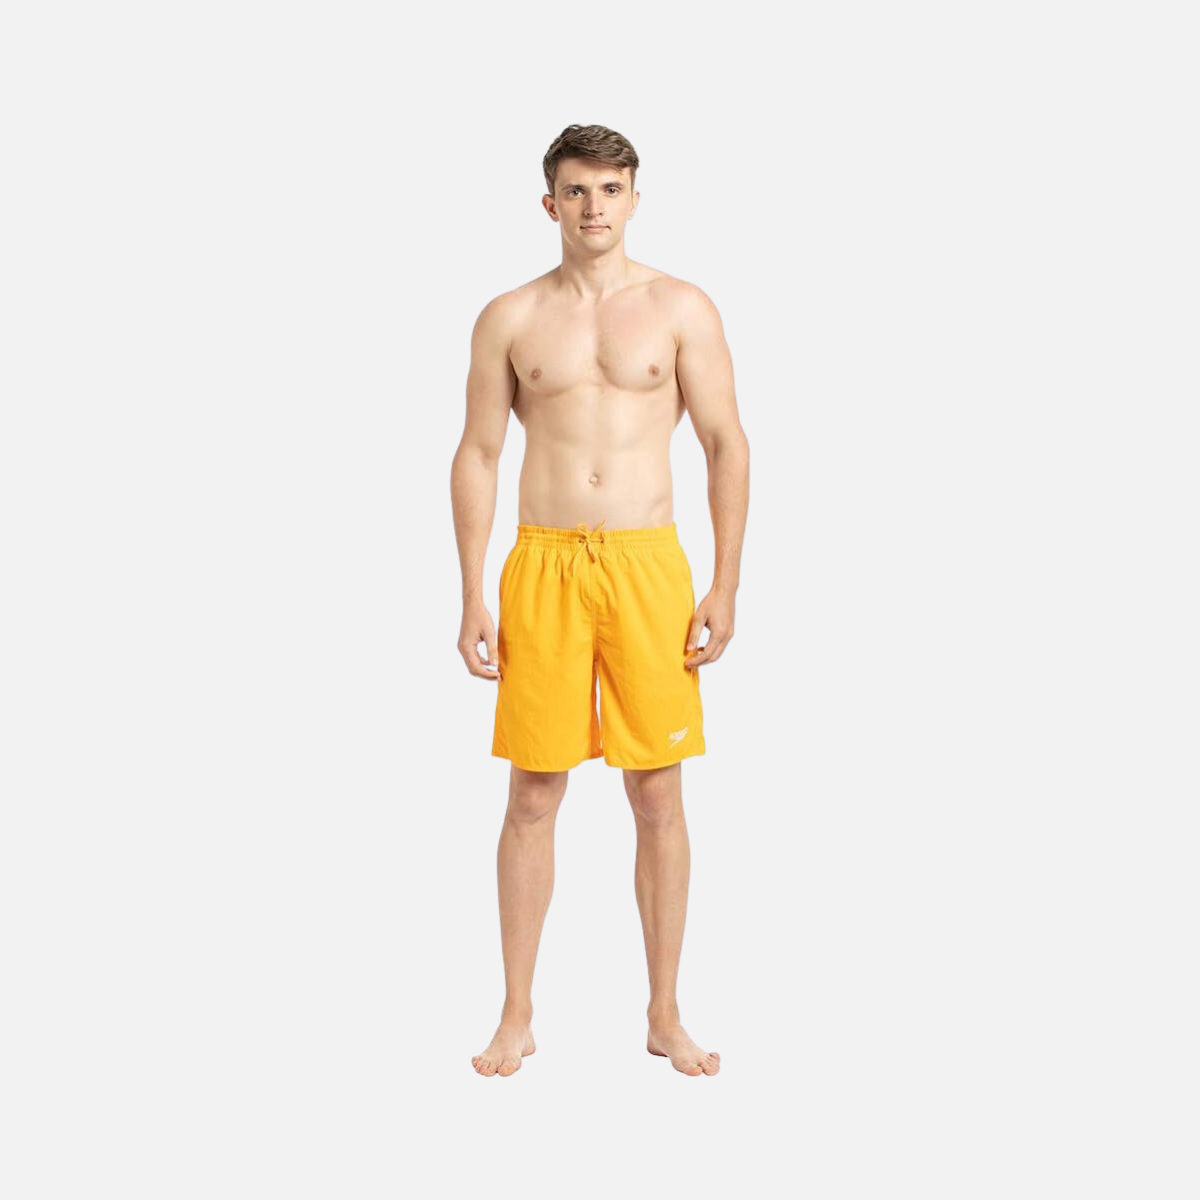 Speedo Am Essential 18 Men's Water Shorts -Mango/White